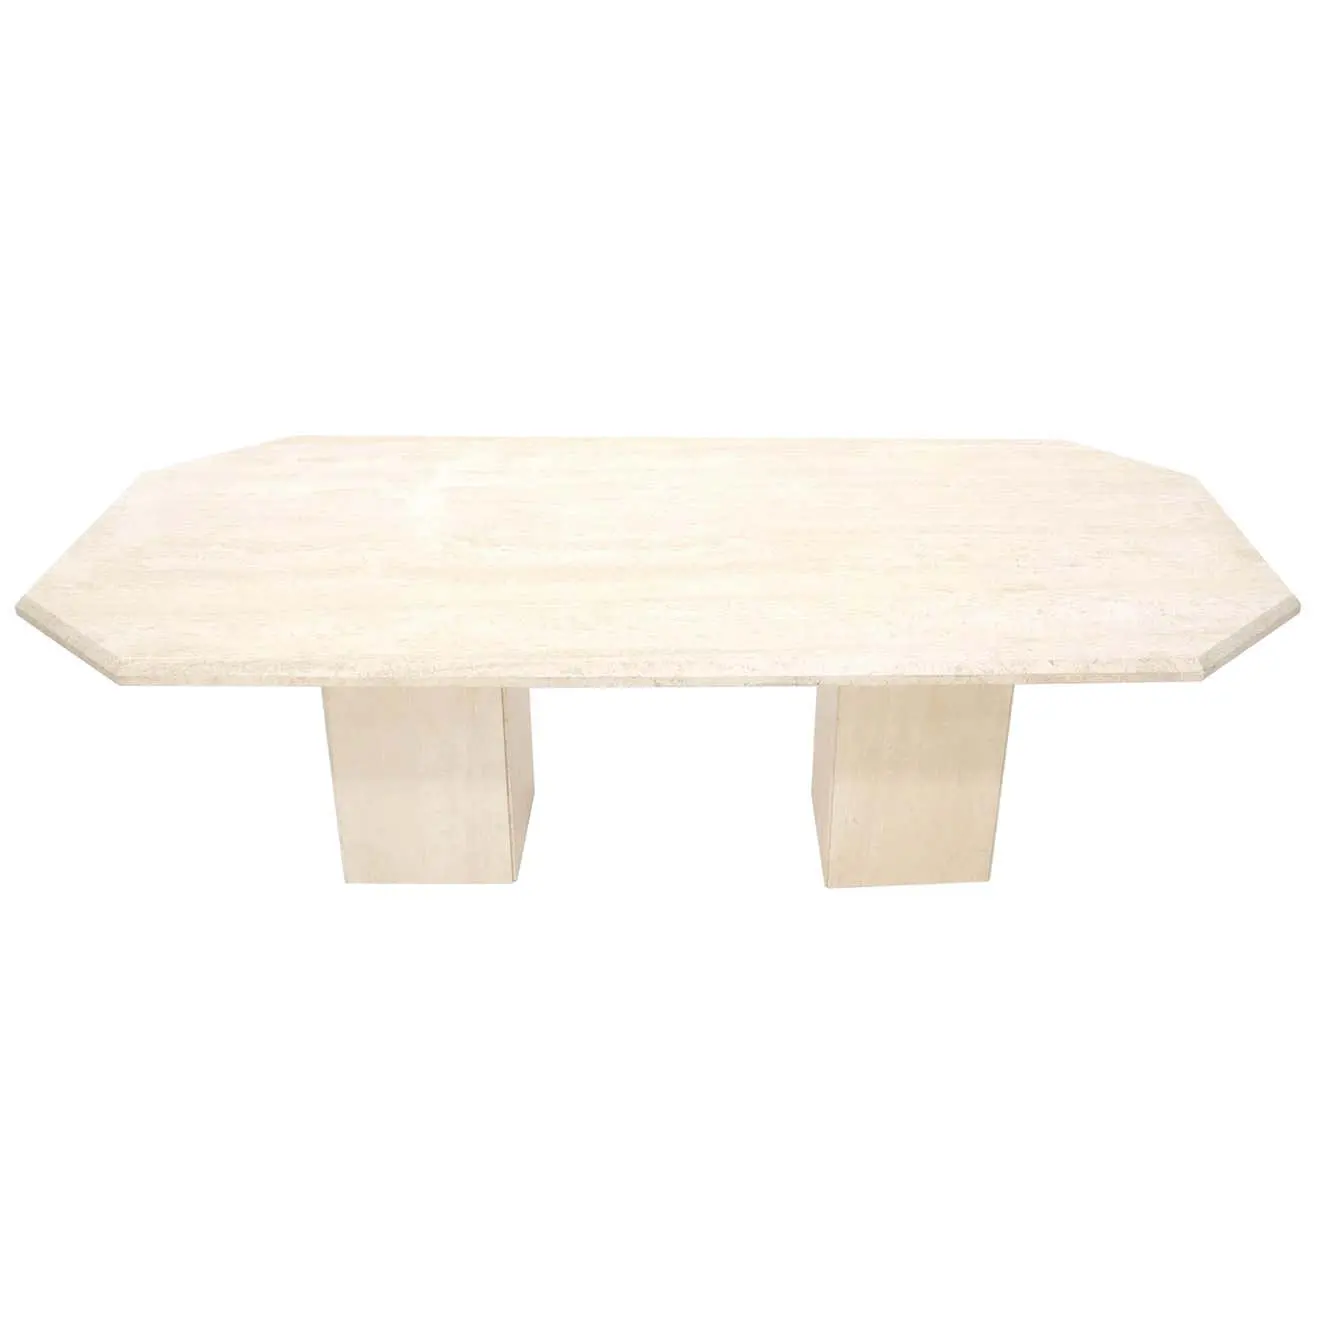 Table de salle à manger en marbre travertin moderne de qualité supérieure Grande table de salle à manger ou de conférence en travertin rectangulaire à double piédestal